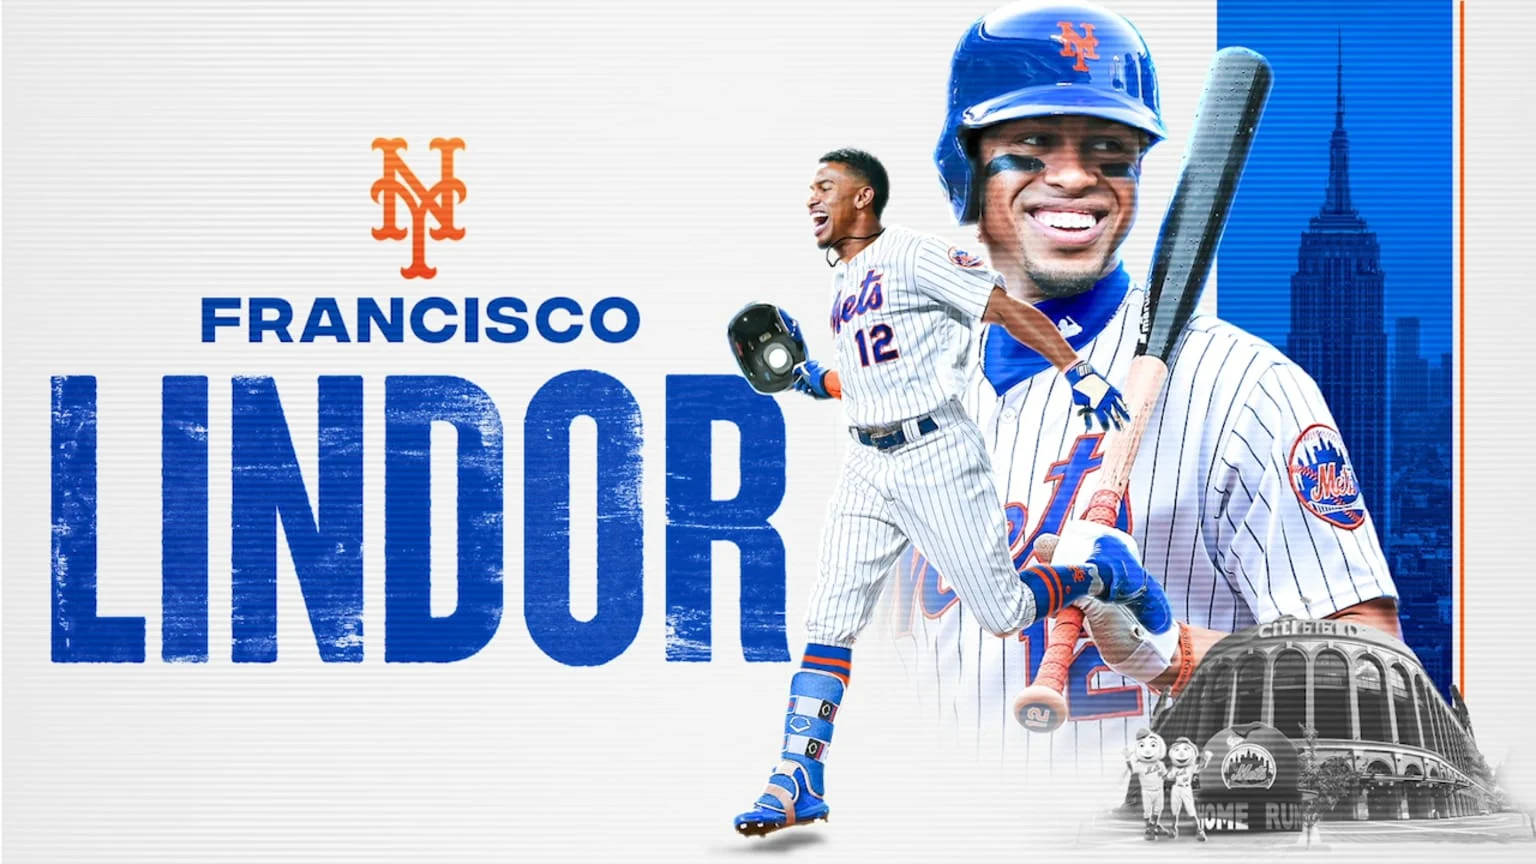 Francisco Lindor Baseball Poster Background